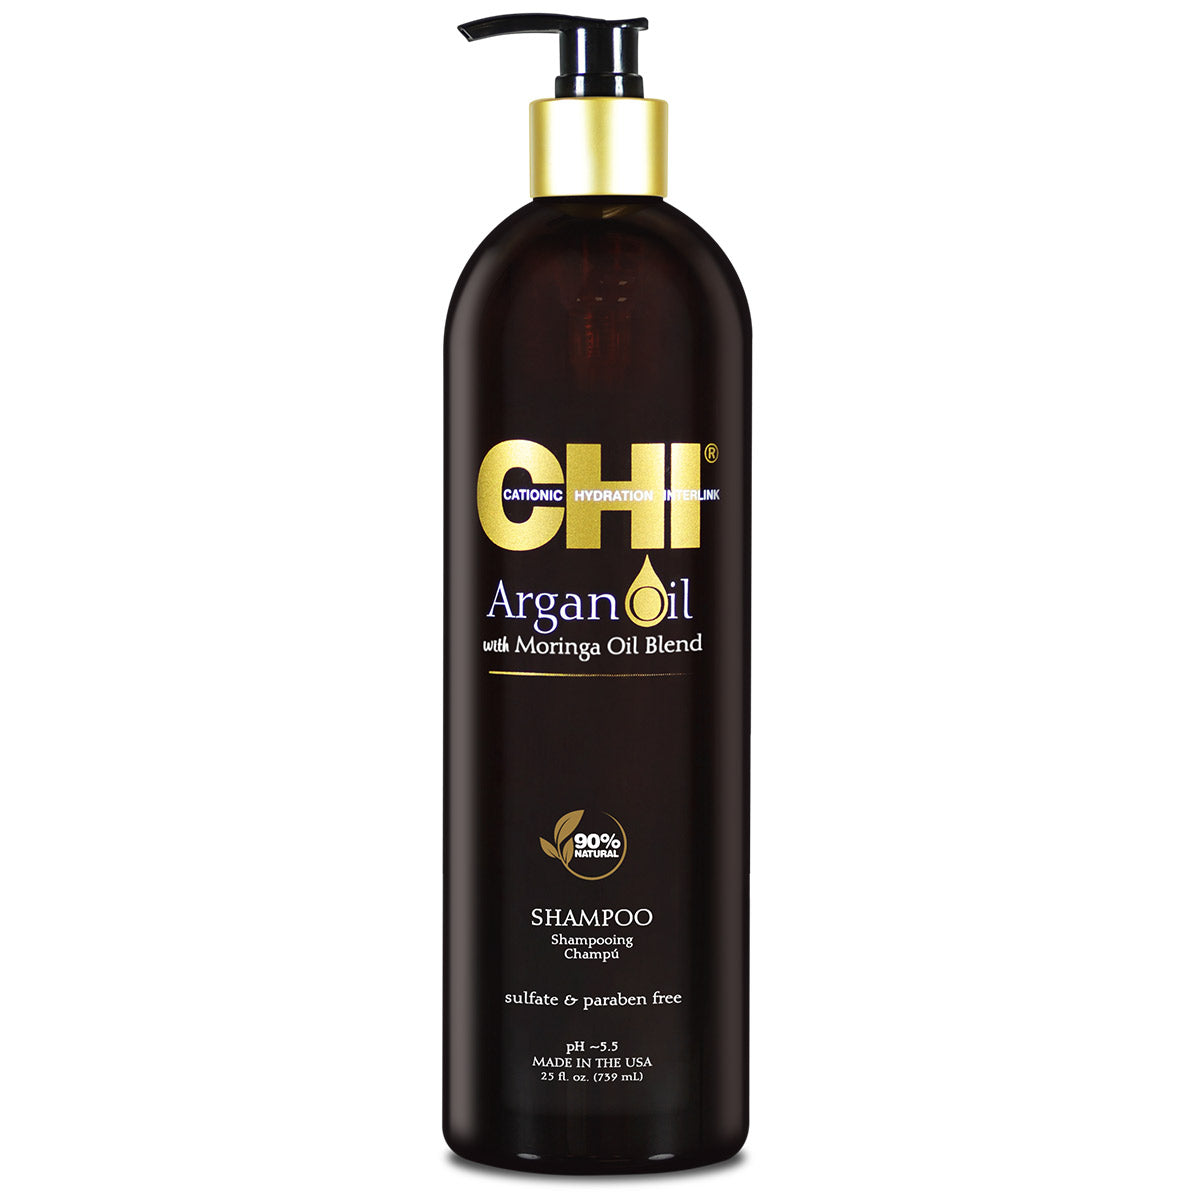 Argan Oil Plus Moringa Oil Shampoo